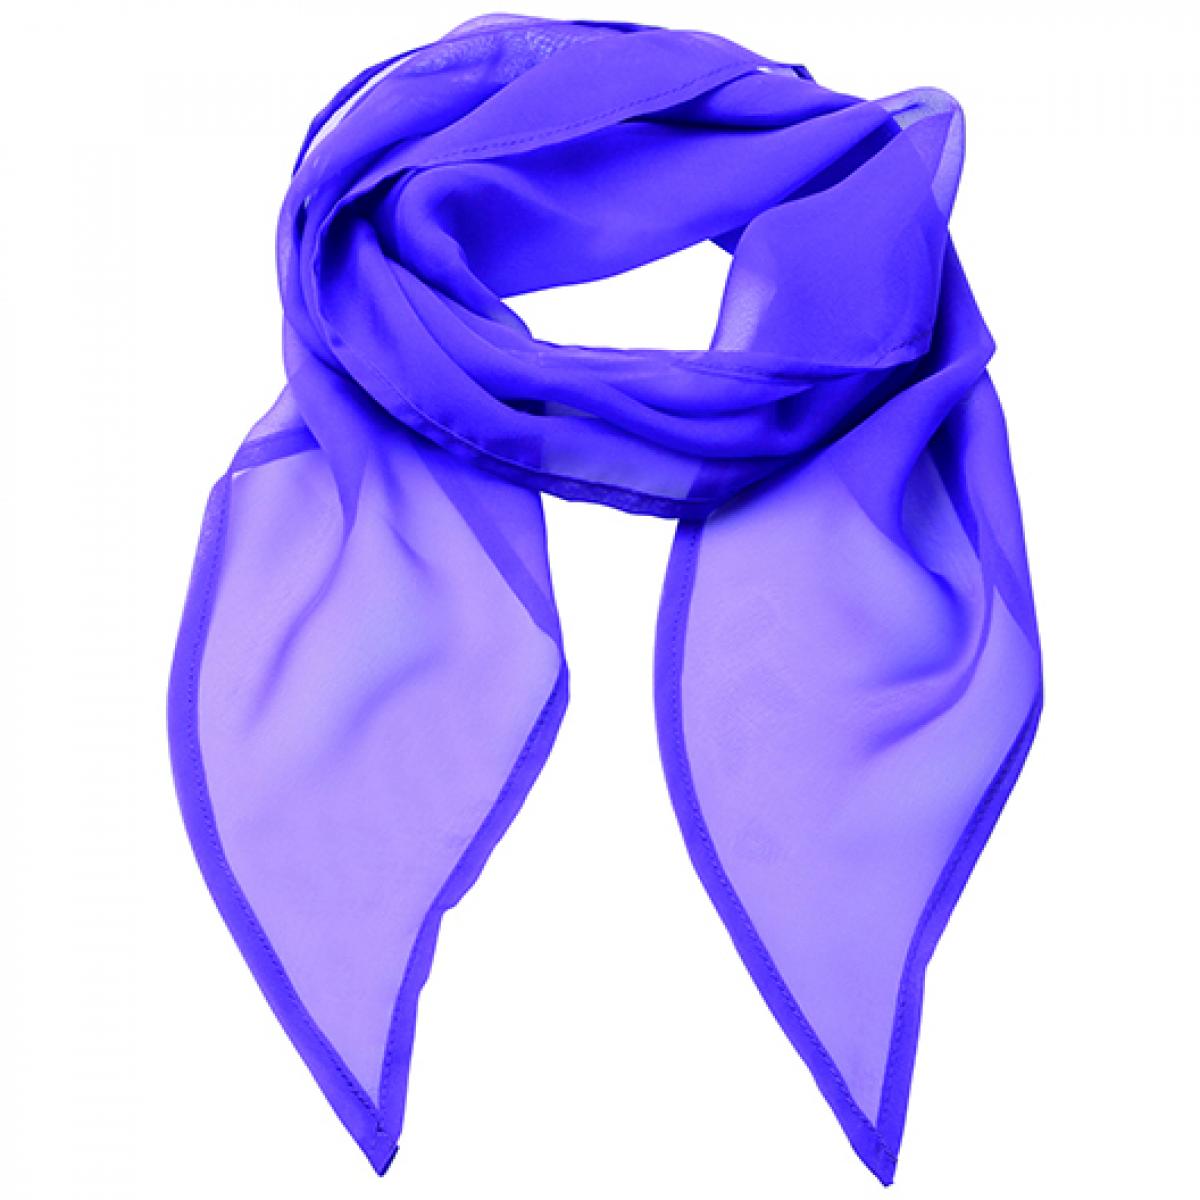 Hersteller: Premier Workwear Herstellernummer: PR740 Artikelbezeichnung: Schal Women`s Colour Chiffon Scarf - 98 x 16,5 cm Farbe: Rich Violet (ca. Pantone 2587)